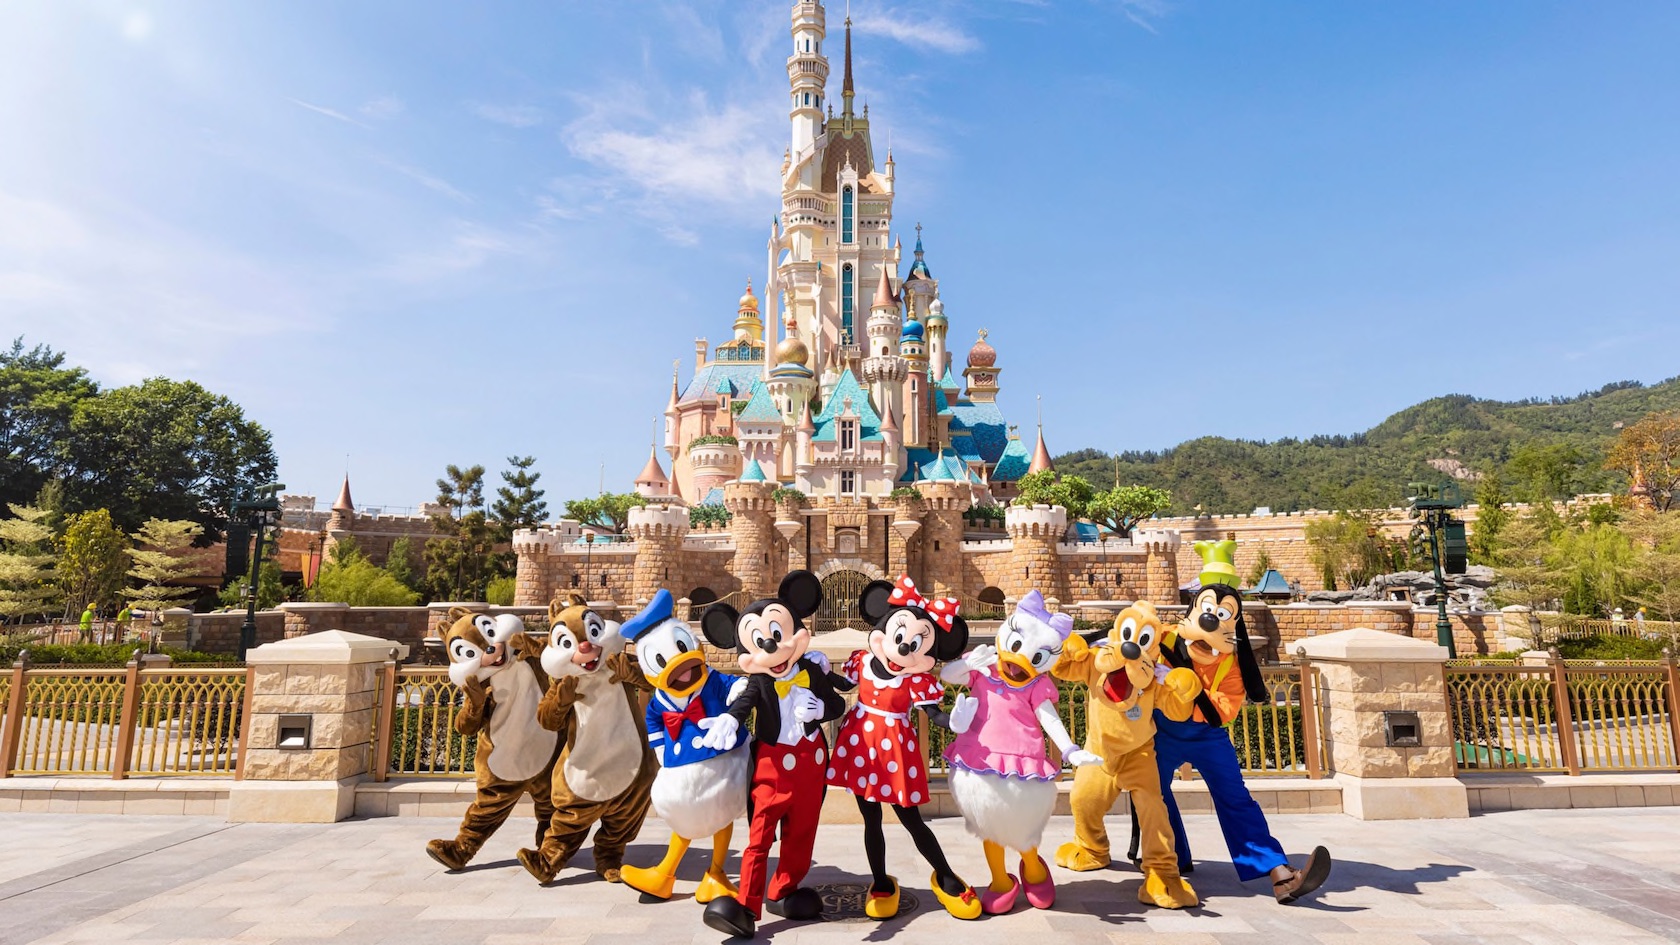 NEWS: Hong Kong Disneyland Has Extended Its Closure